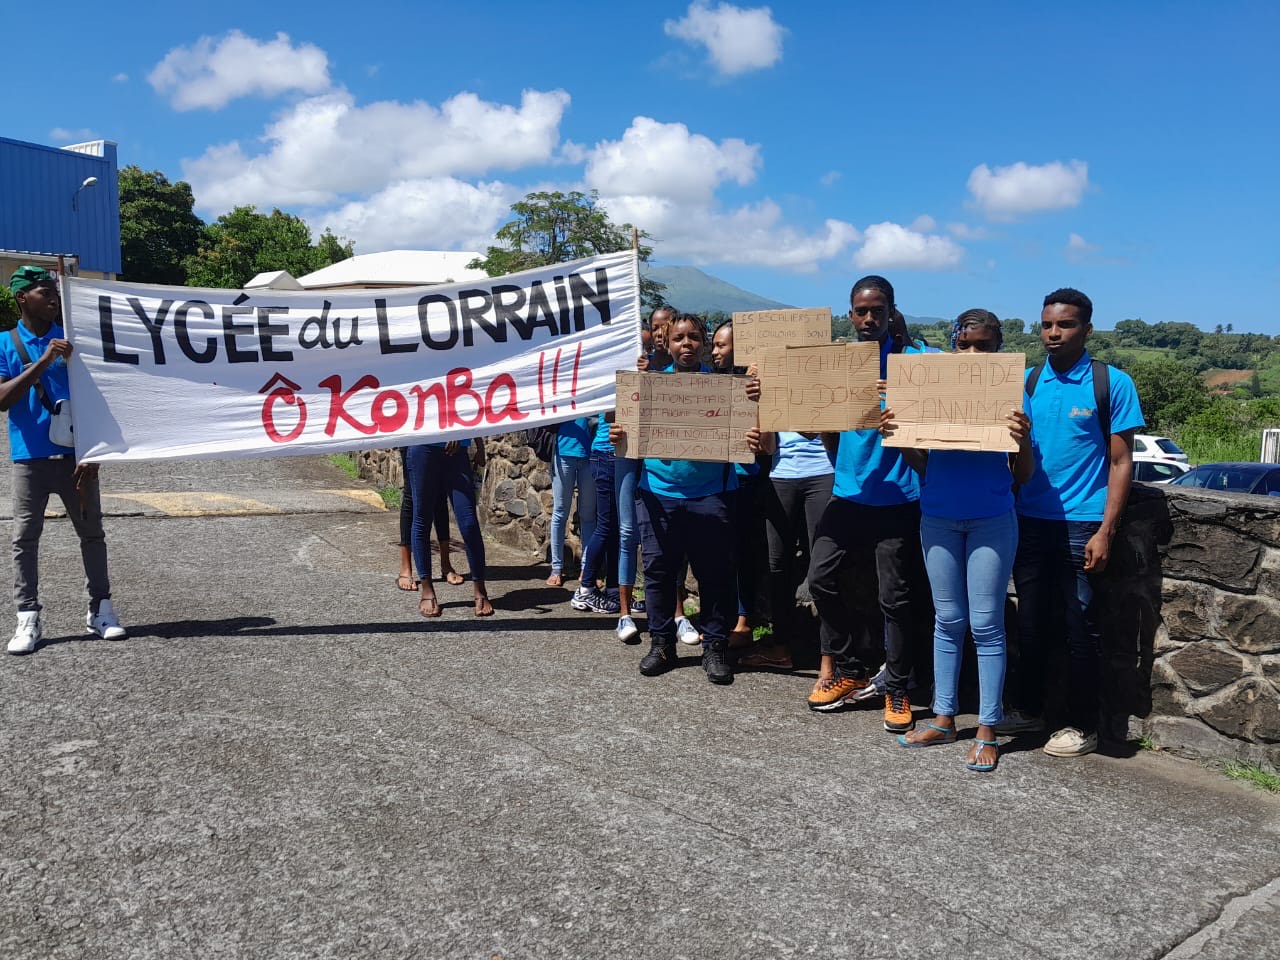     Les élèves manifestent au lycée du Lorrain

